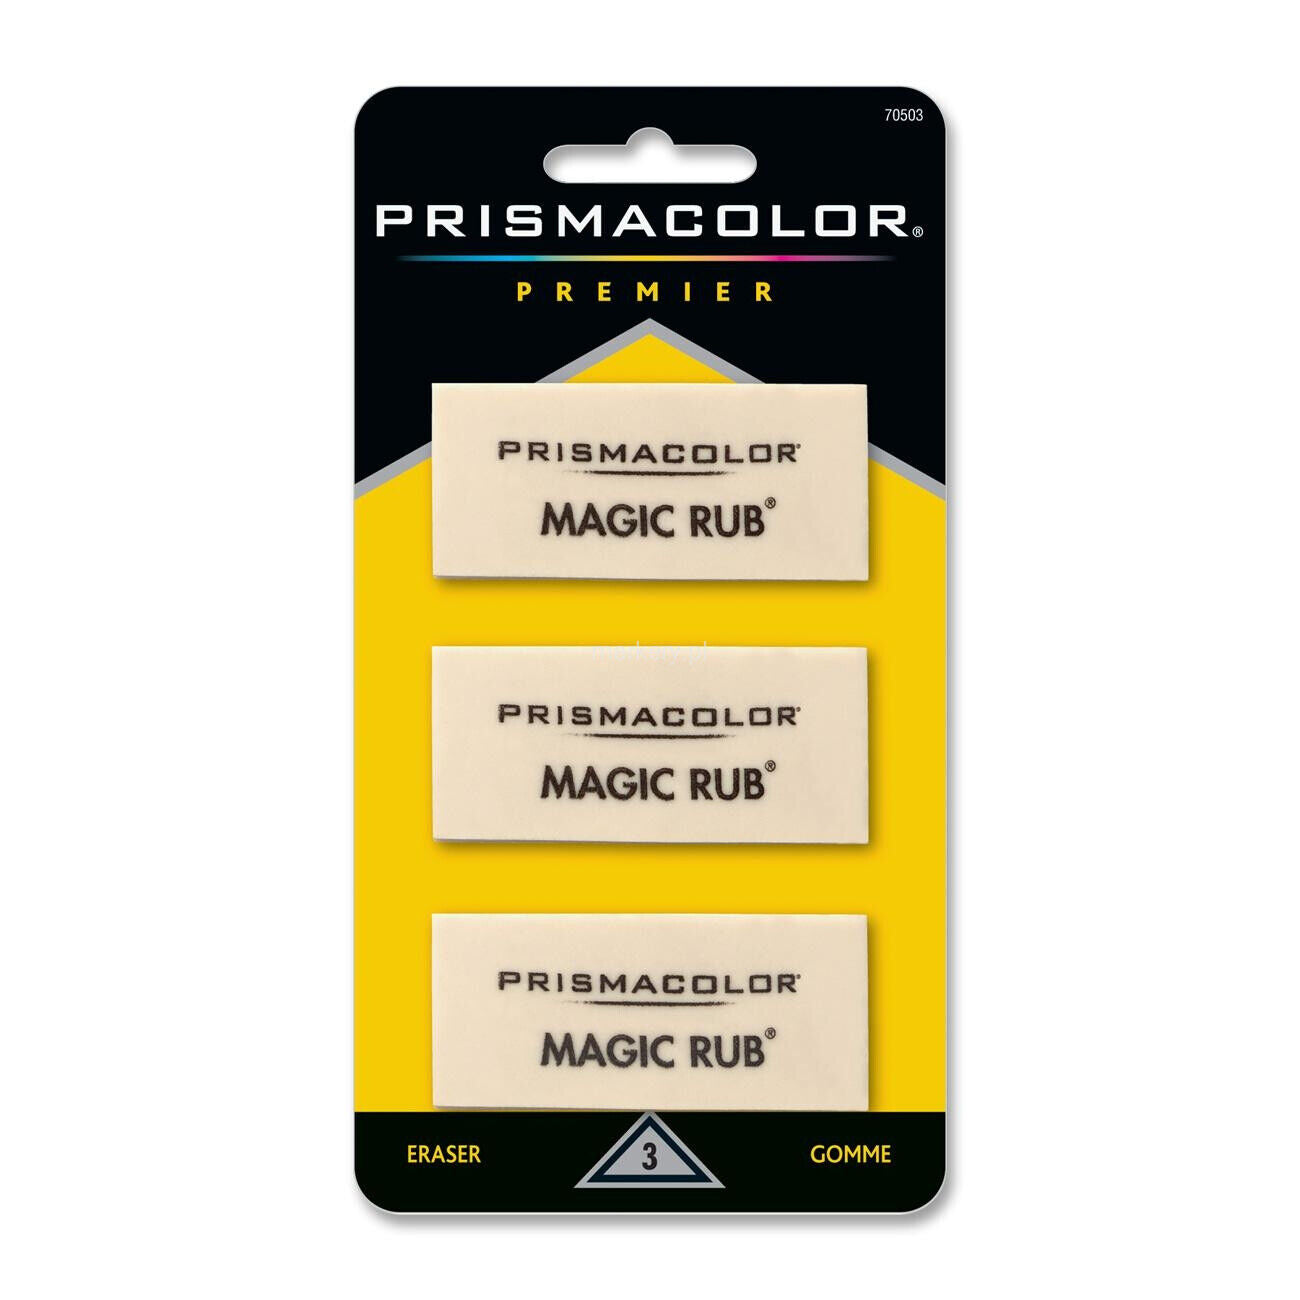 Prismacolor Premier Magic Rub Lot de 3 gommes en vinyle